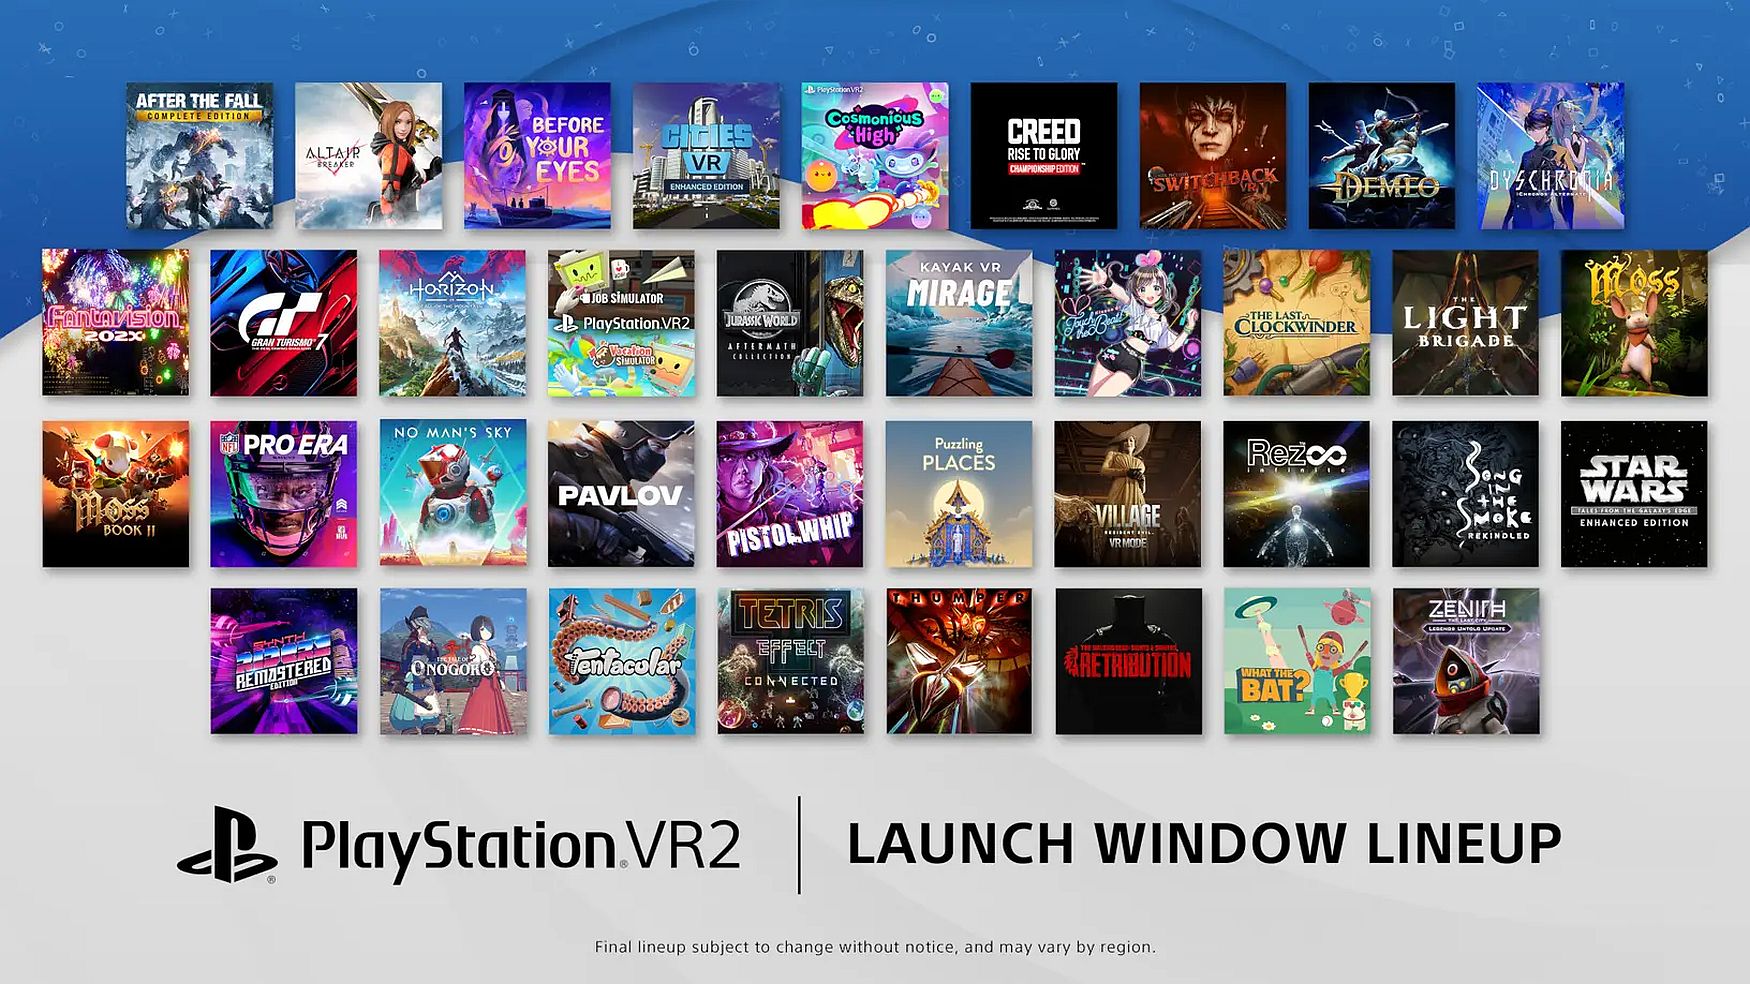 13 game tambahan datang ke PlayStation VR2 dalam jendela peluncuran